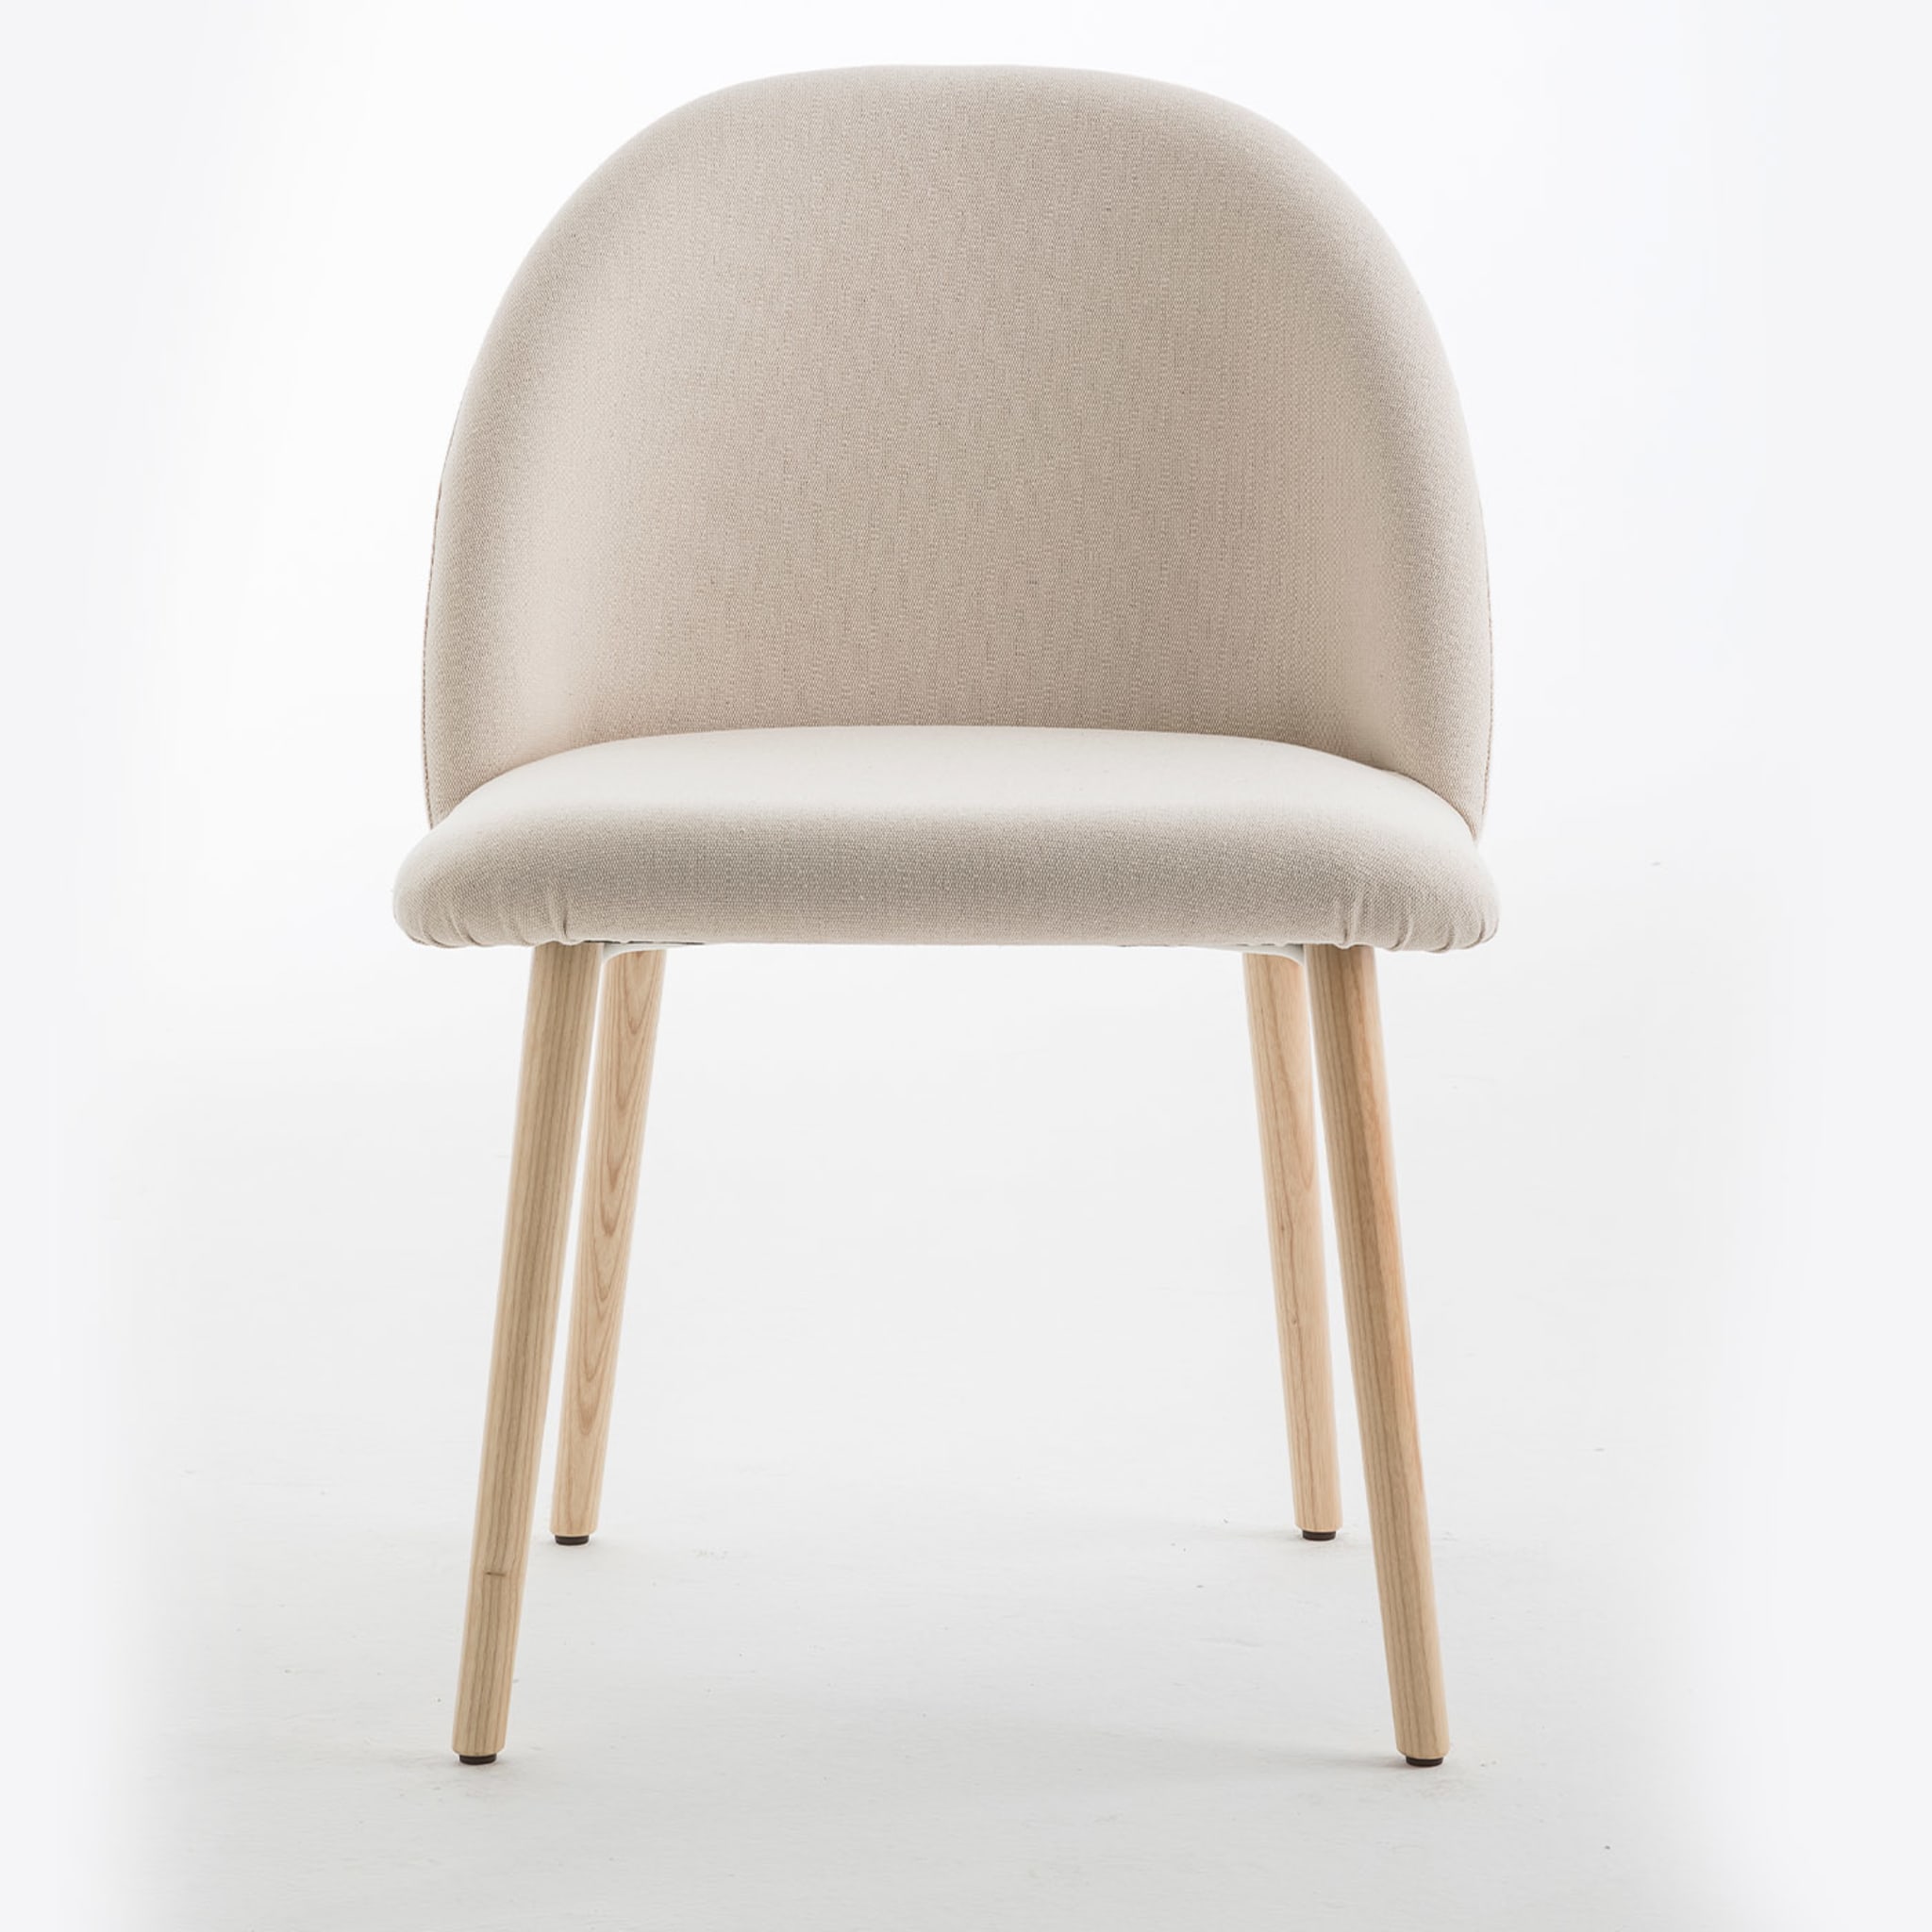 Bloom Beige Chair - Alternative view 1